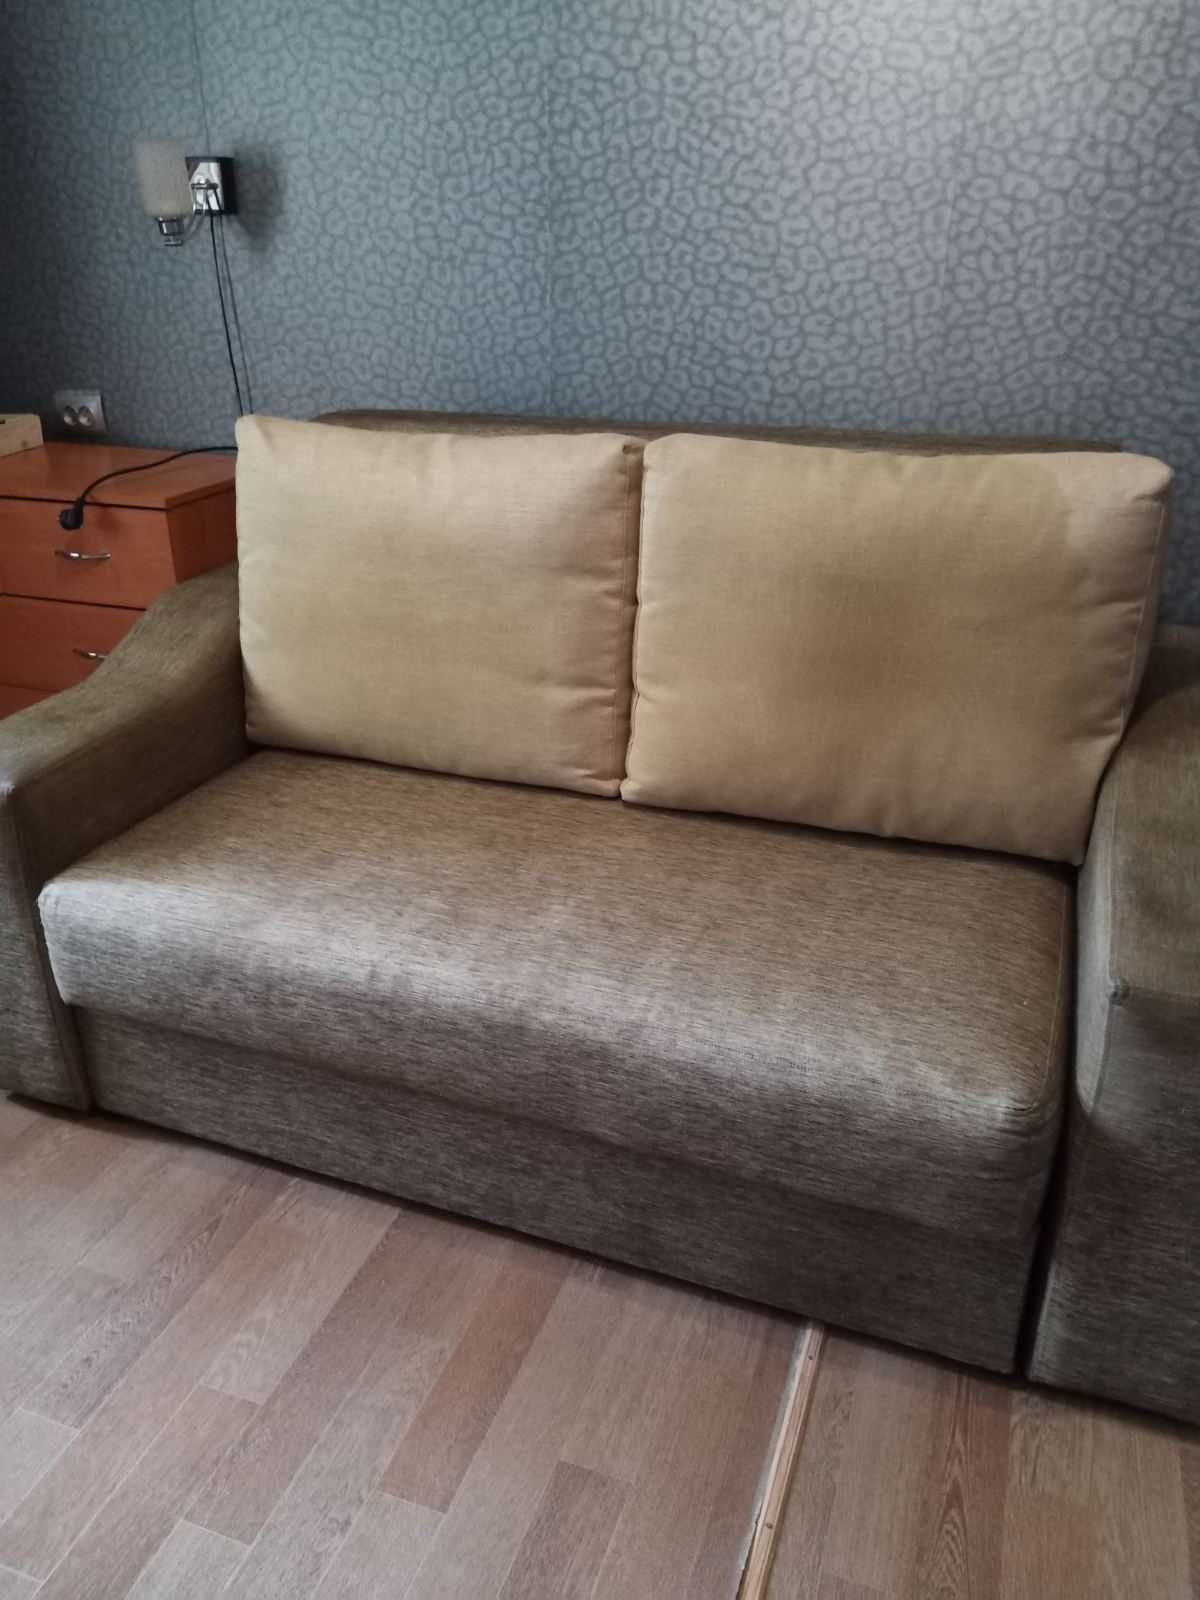 Продам диван-кровать, раскладывается вперед, цвет серый металлик